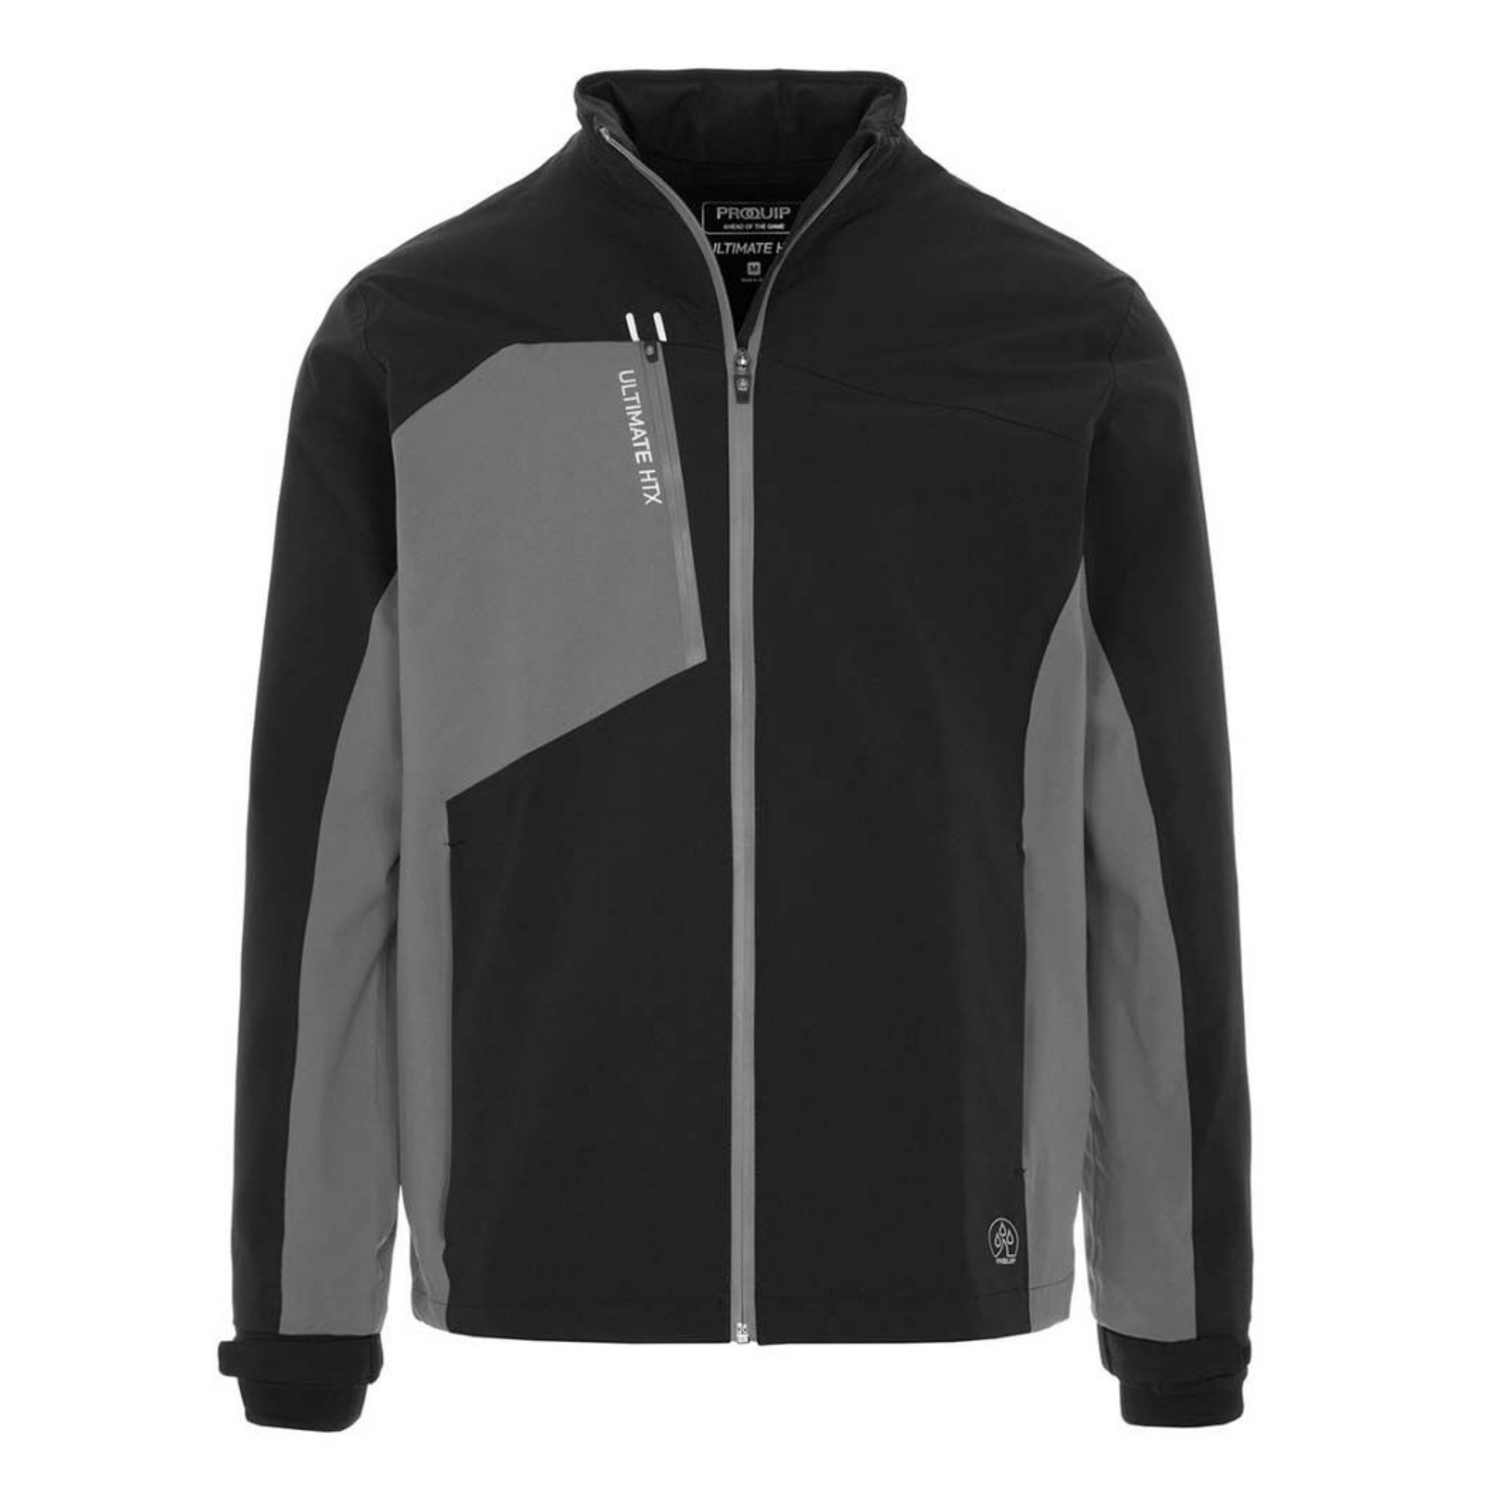 Proquip Golf Ultimate HTX Waterproof Jacket Black / Zinc Grey M 